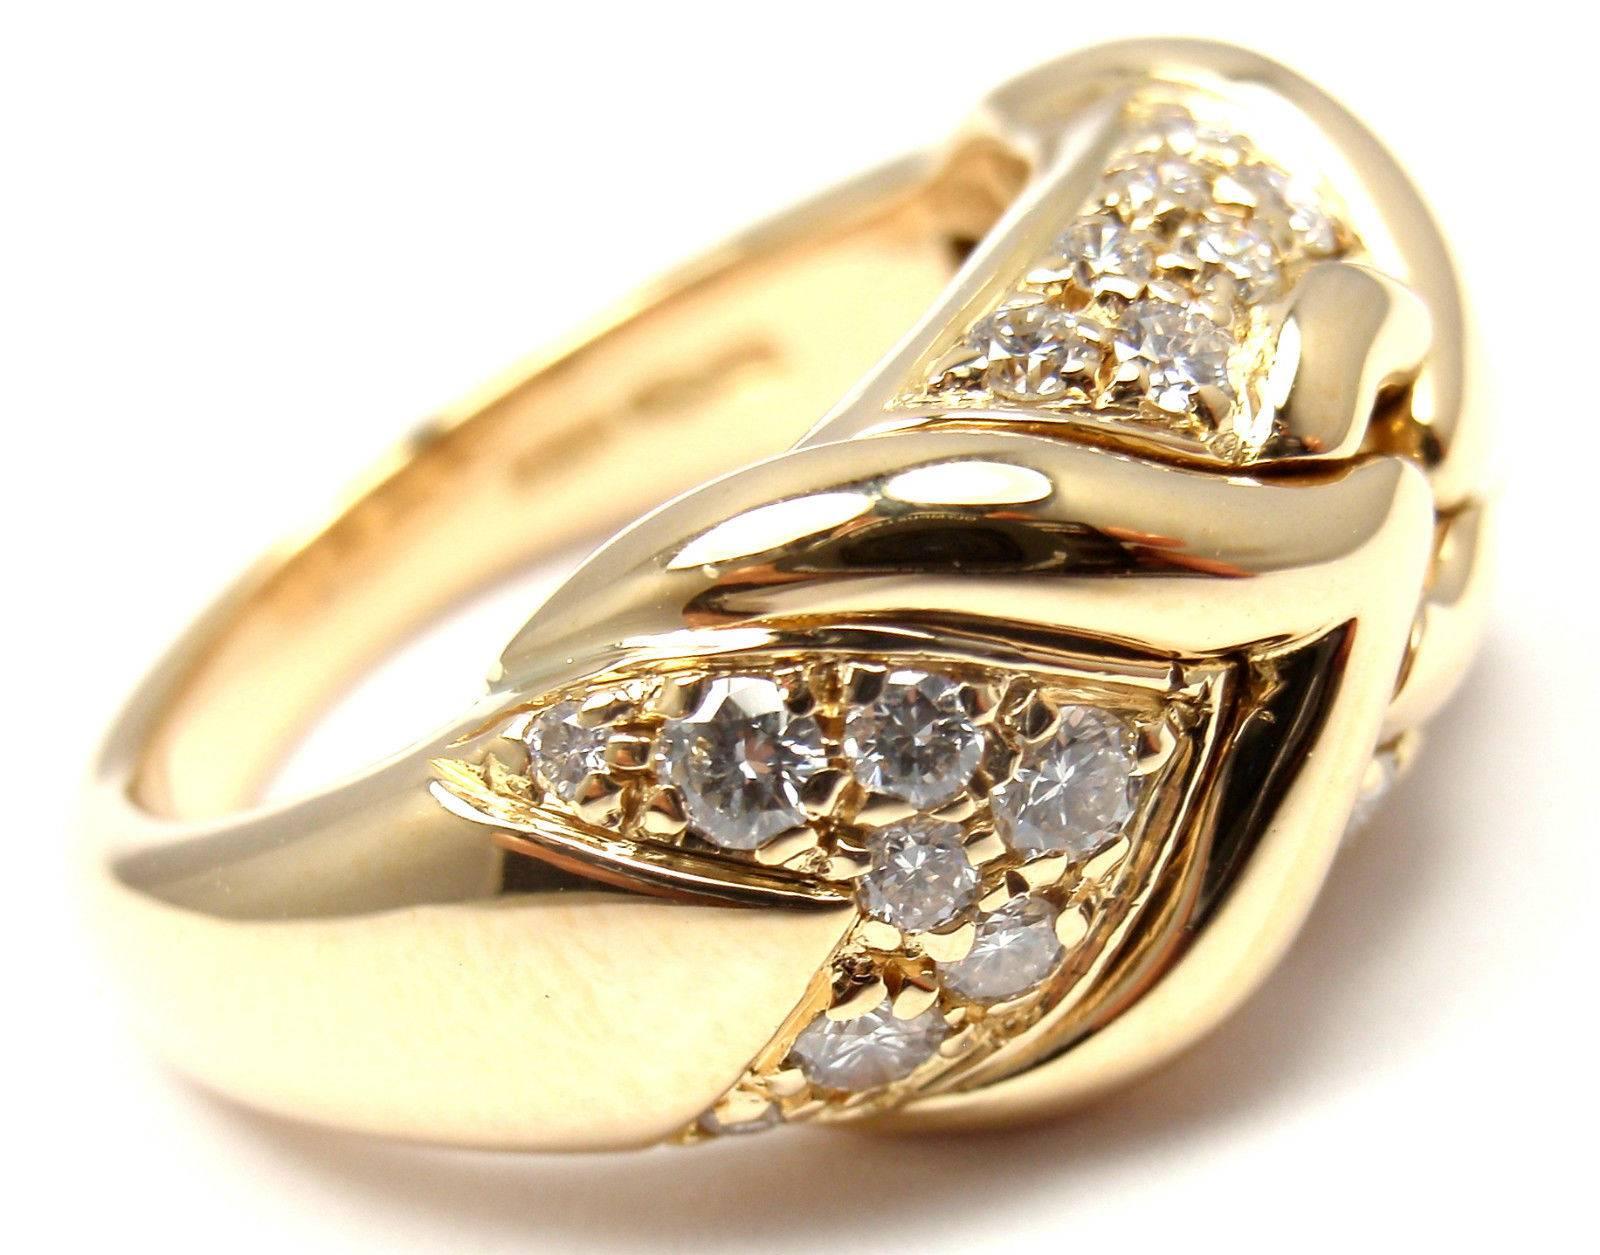 bague à anneau en or jaune 18 carats et diamant de Bulgari. 
Avec 30 diamants ronds d'un poids total d'environ 0,75 ct, pureté VS1, couleur E

Détails : 
Taille de l'anneau : 5.5
Poids : 10,6 grammes 
Largeur : 10mm 
Poinçons estampillés :